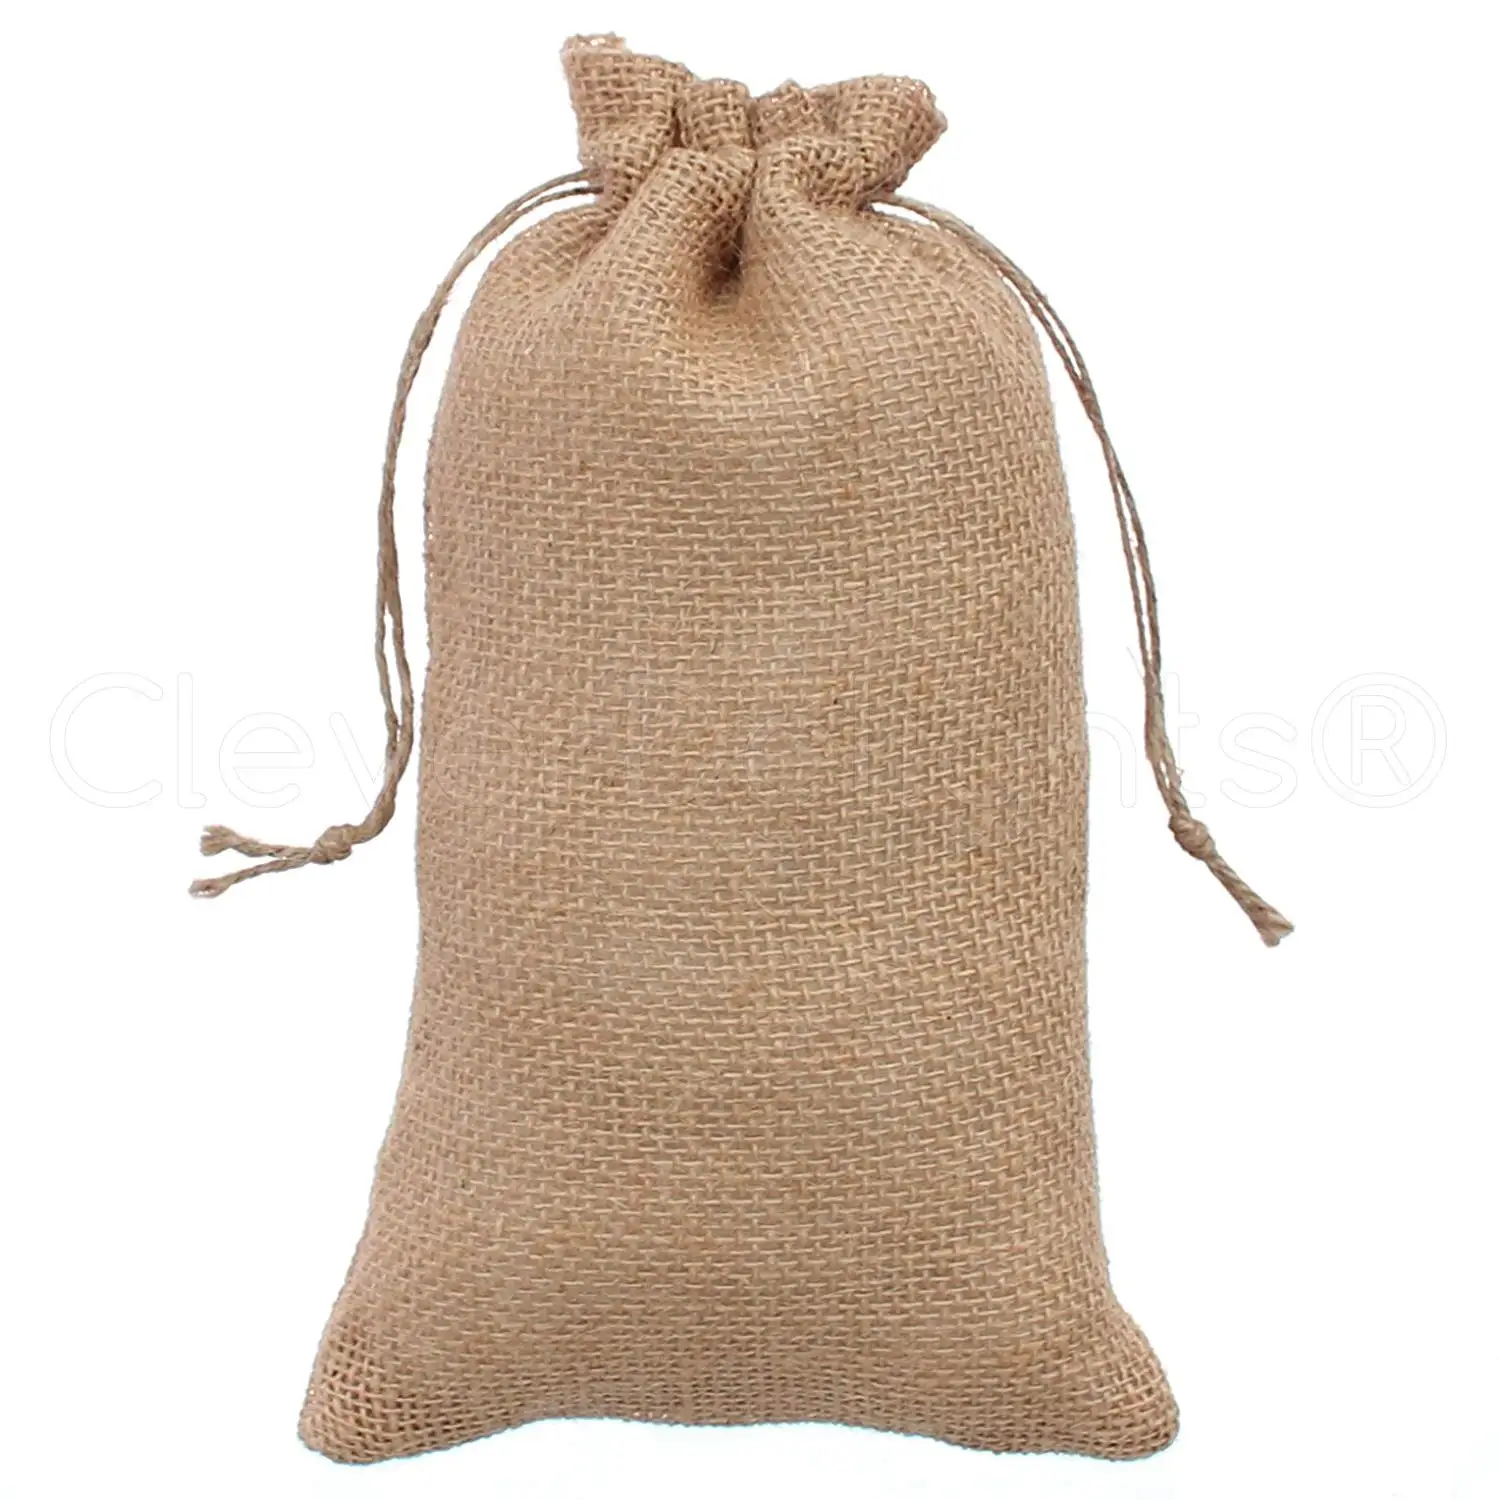 25 Mini Burlap Bags Natural Jute Drawstring 2/" x 3/" Small Sack Favor Bag 2x3